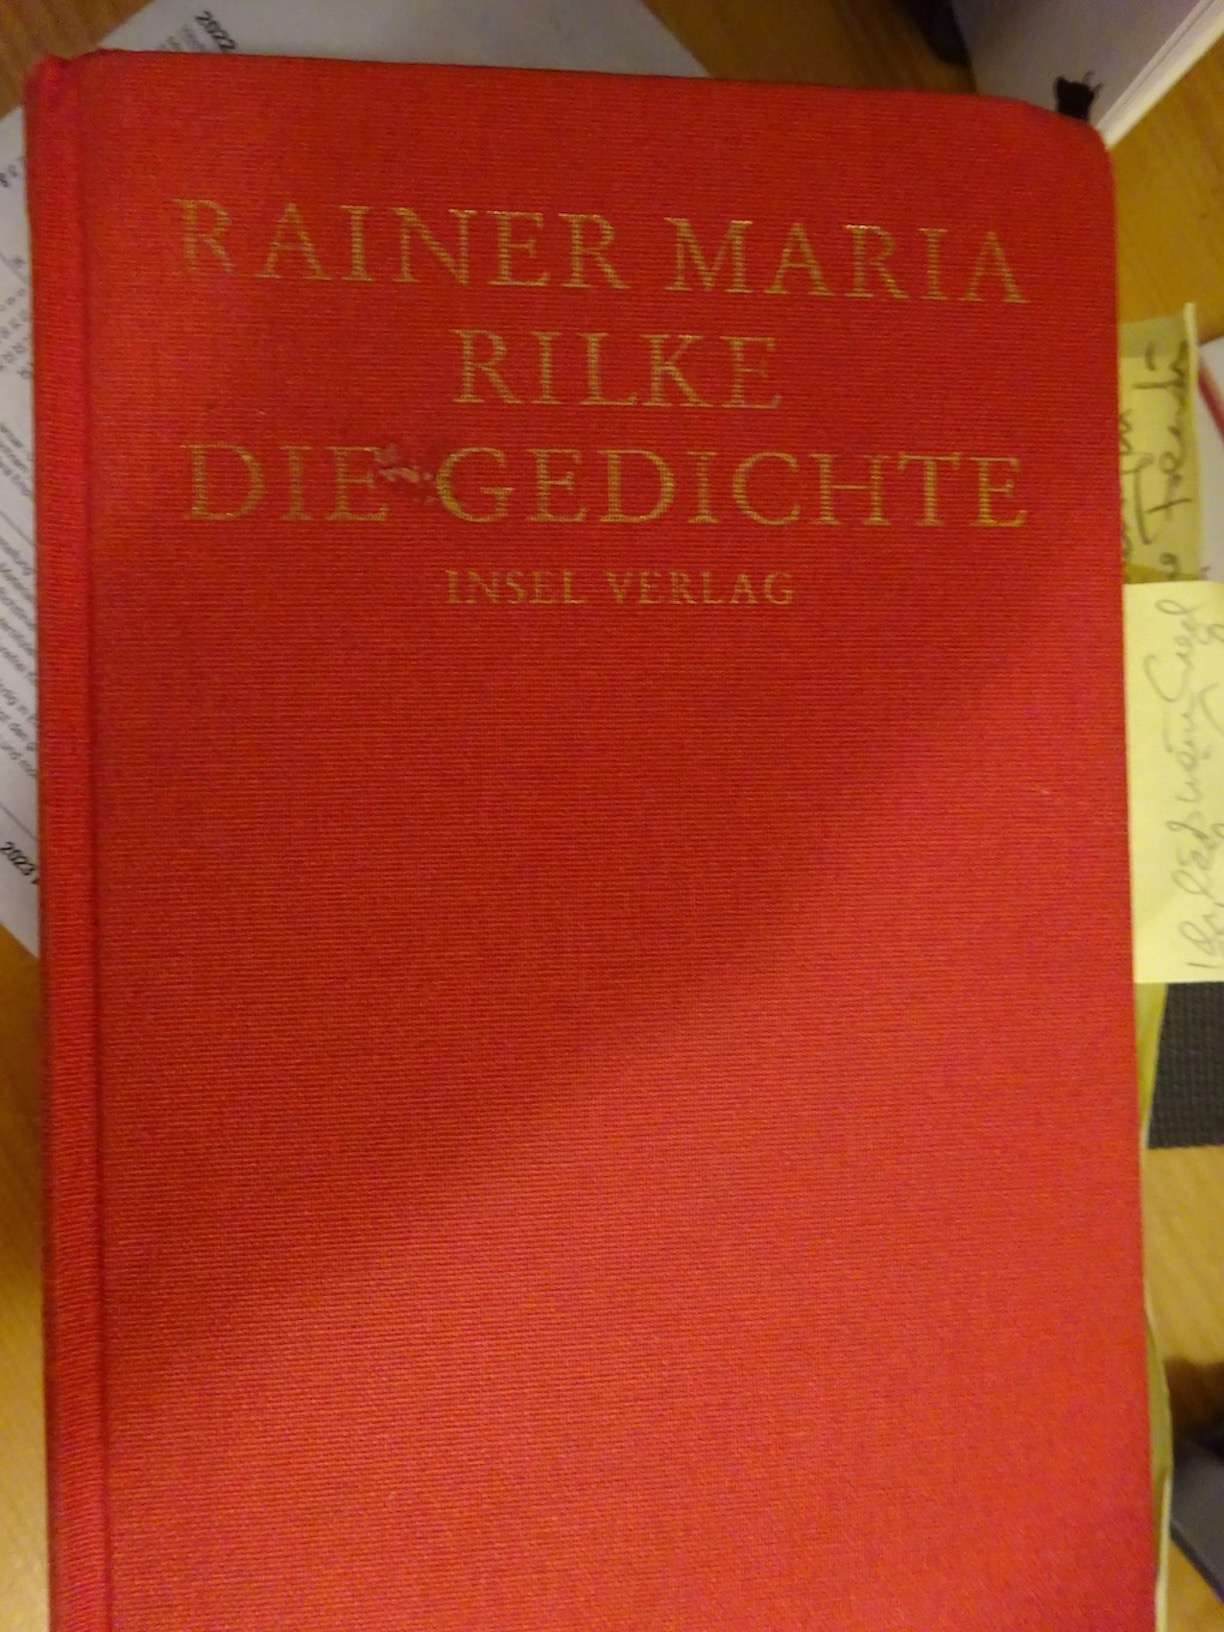 Rilke Die Gedichte.jpg